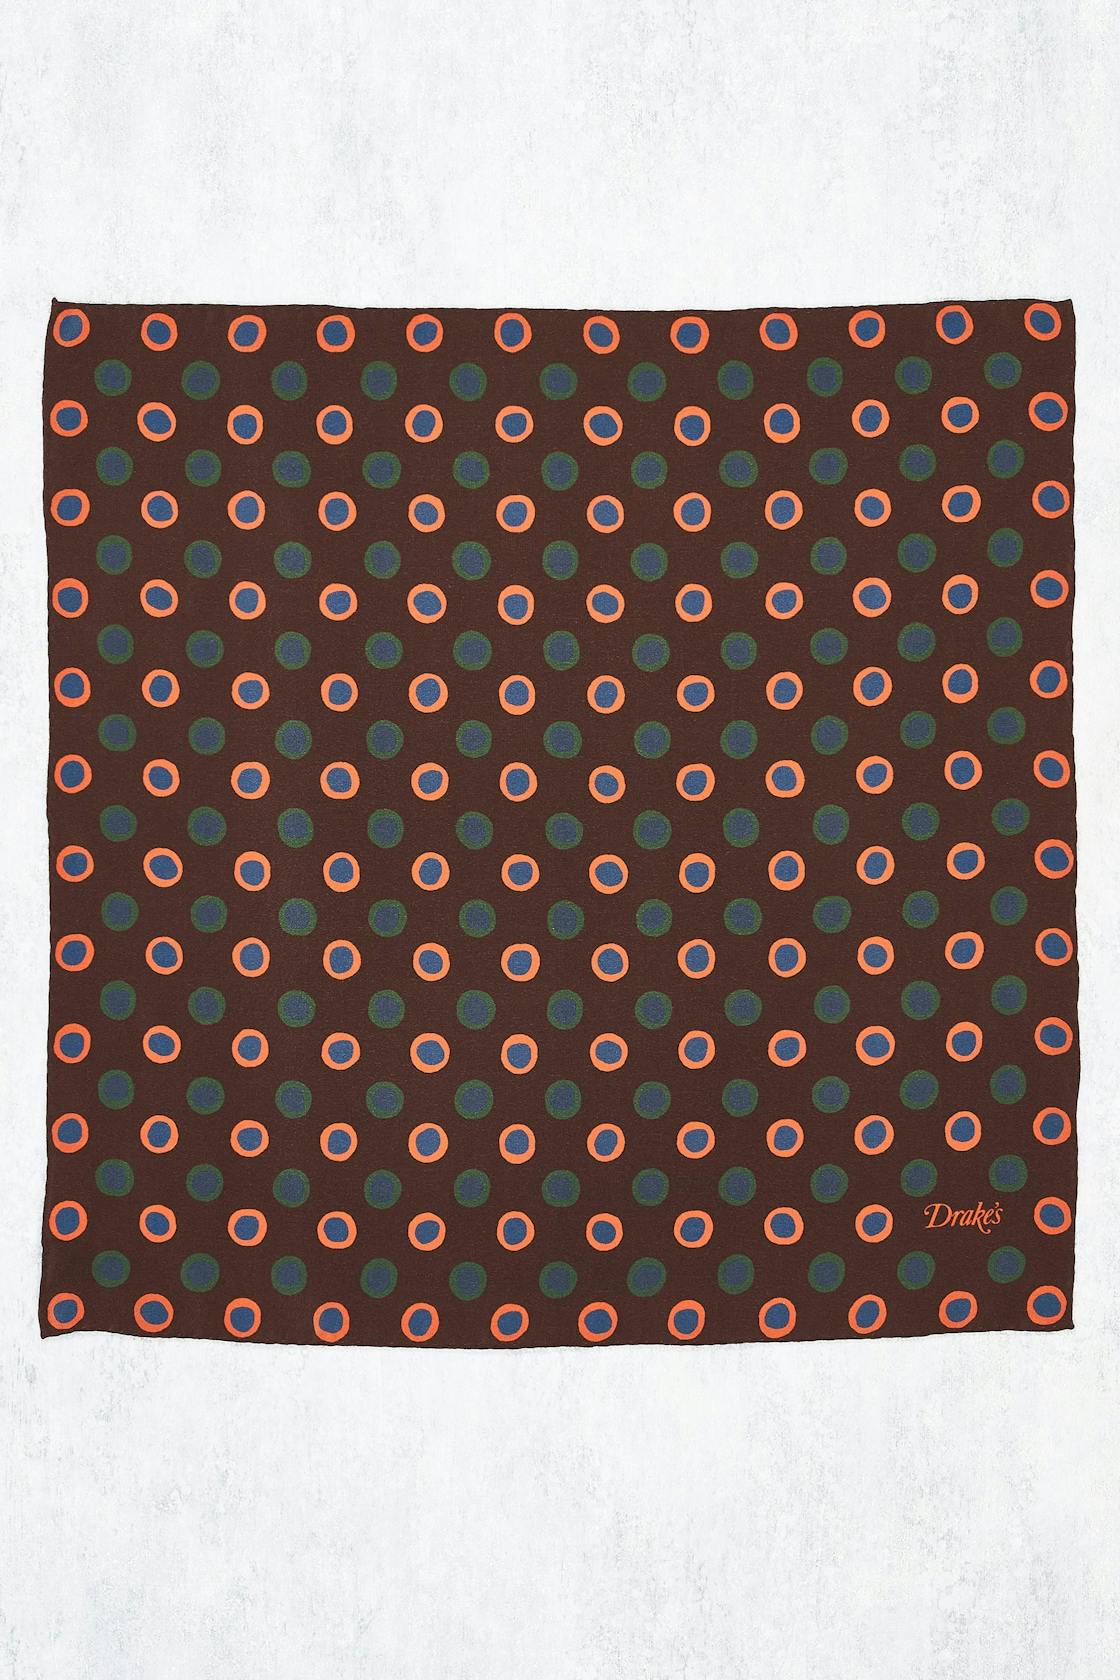 Drake's Brown with Blue/Orange Circle Pattern Silk Pocket Square